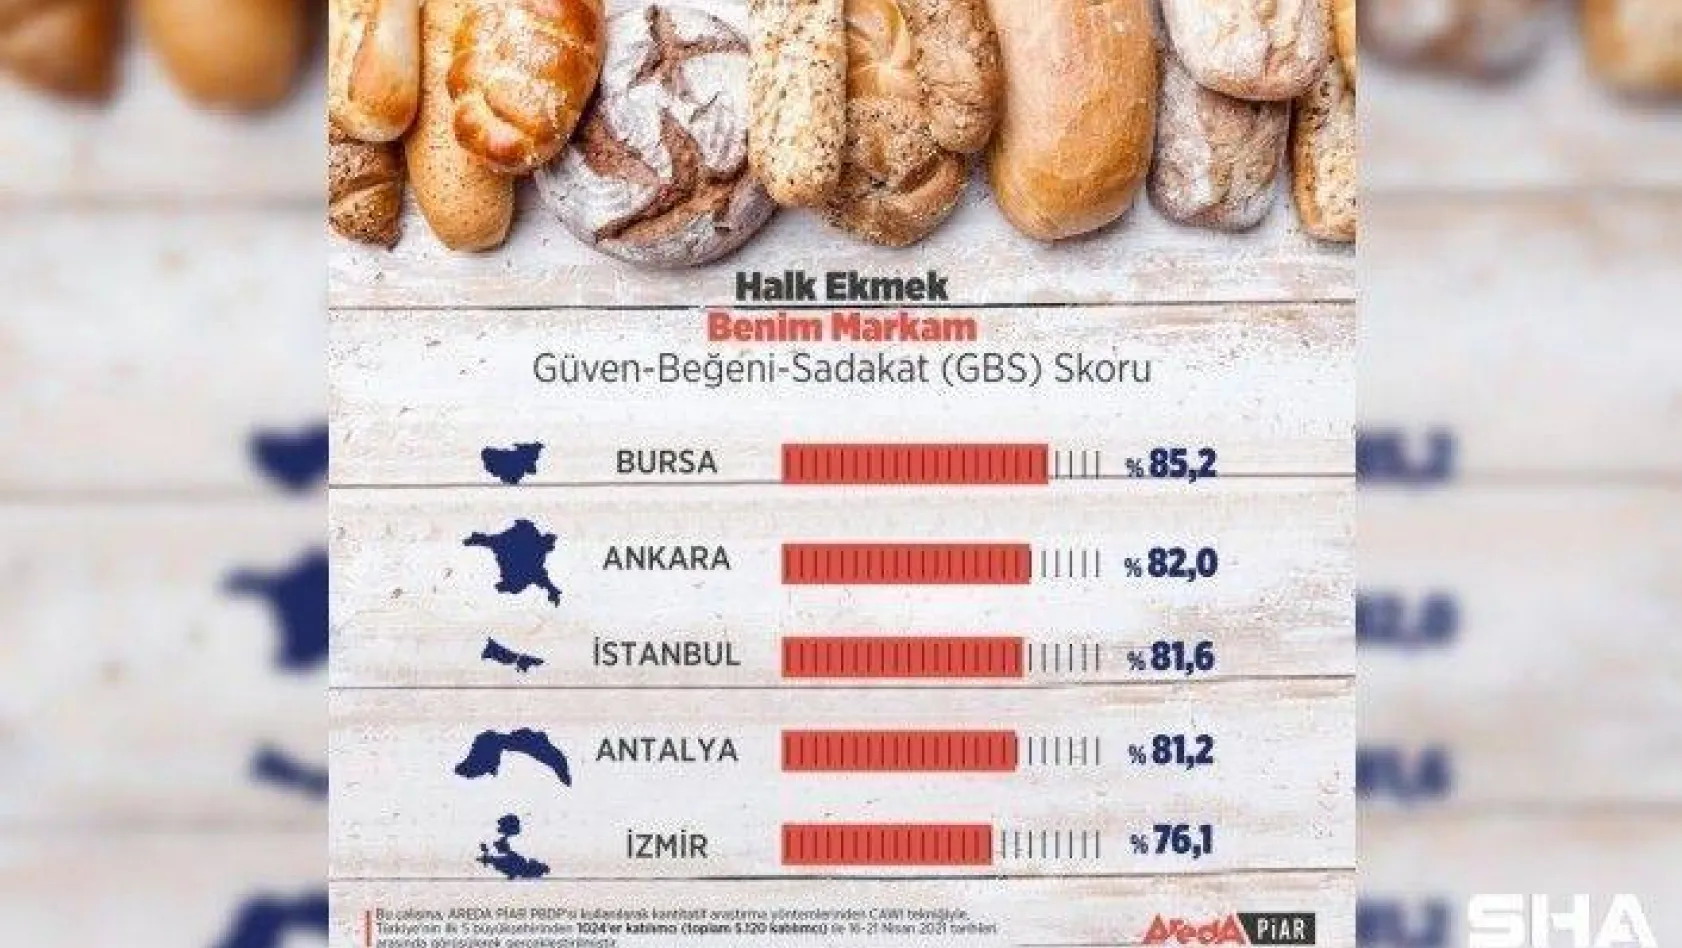 Halk ekmeğe en yüksek puan Bursa'dan